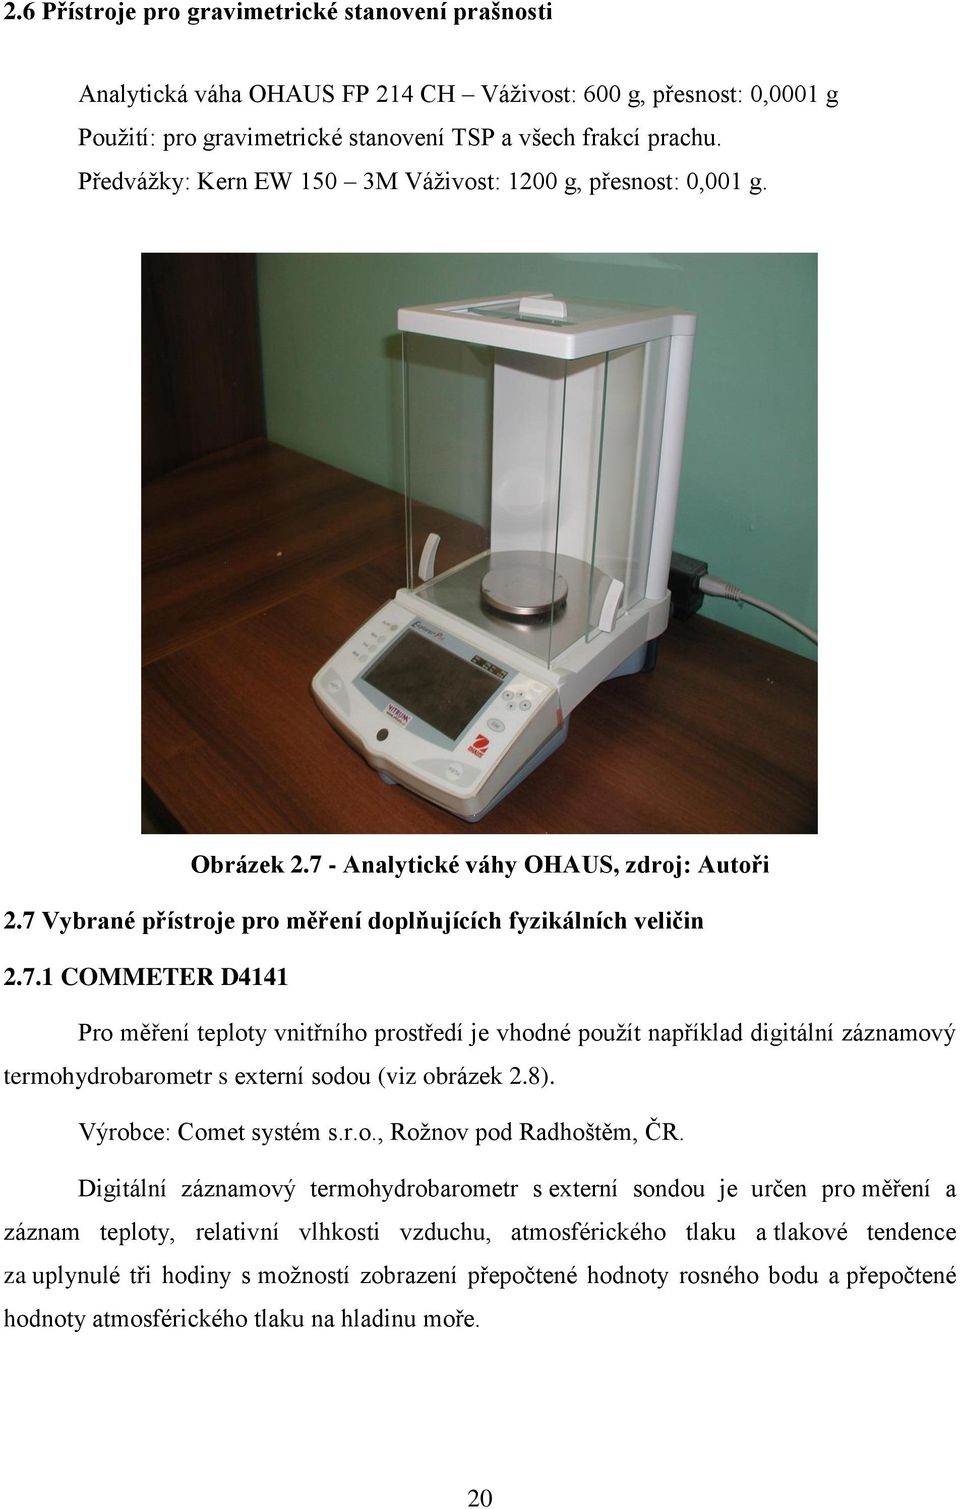 - Analytické váhy OHAUS, zdroj: Autoři 2.7 Vybrané přístroje pro měření doplňujících fyzikálních veličin 2.7.1 COMMETER D4141 Pro měření teploty vnitřního prostředí je vhodné použít například digitální záznamový termohydrobarometr s externí sodou (viz obrázek 2.